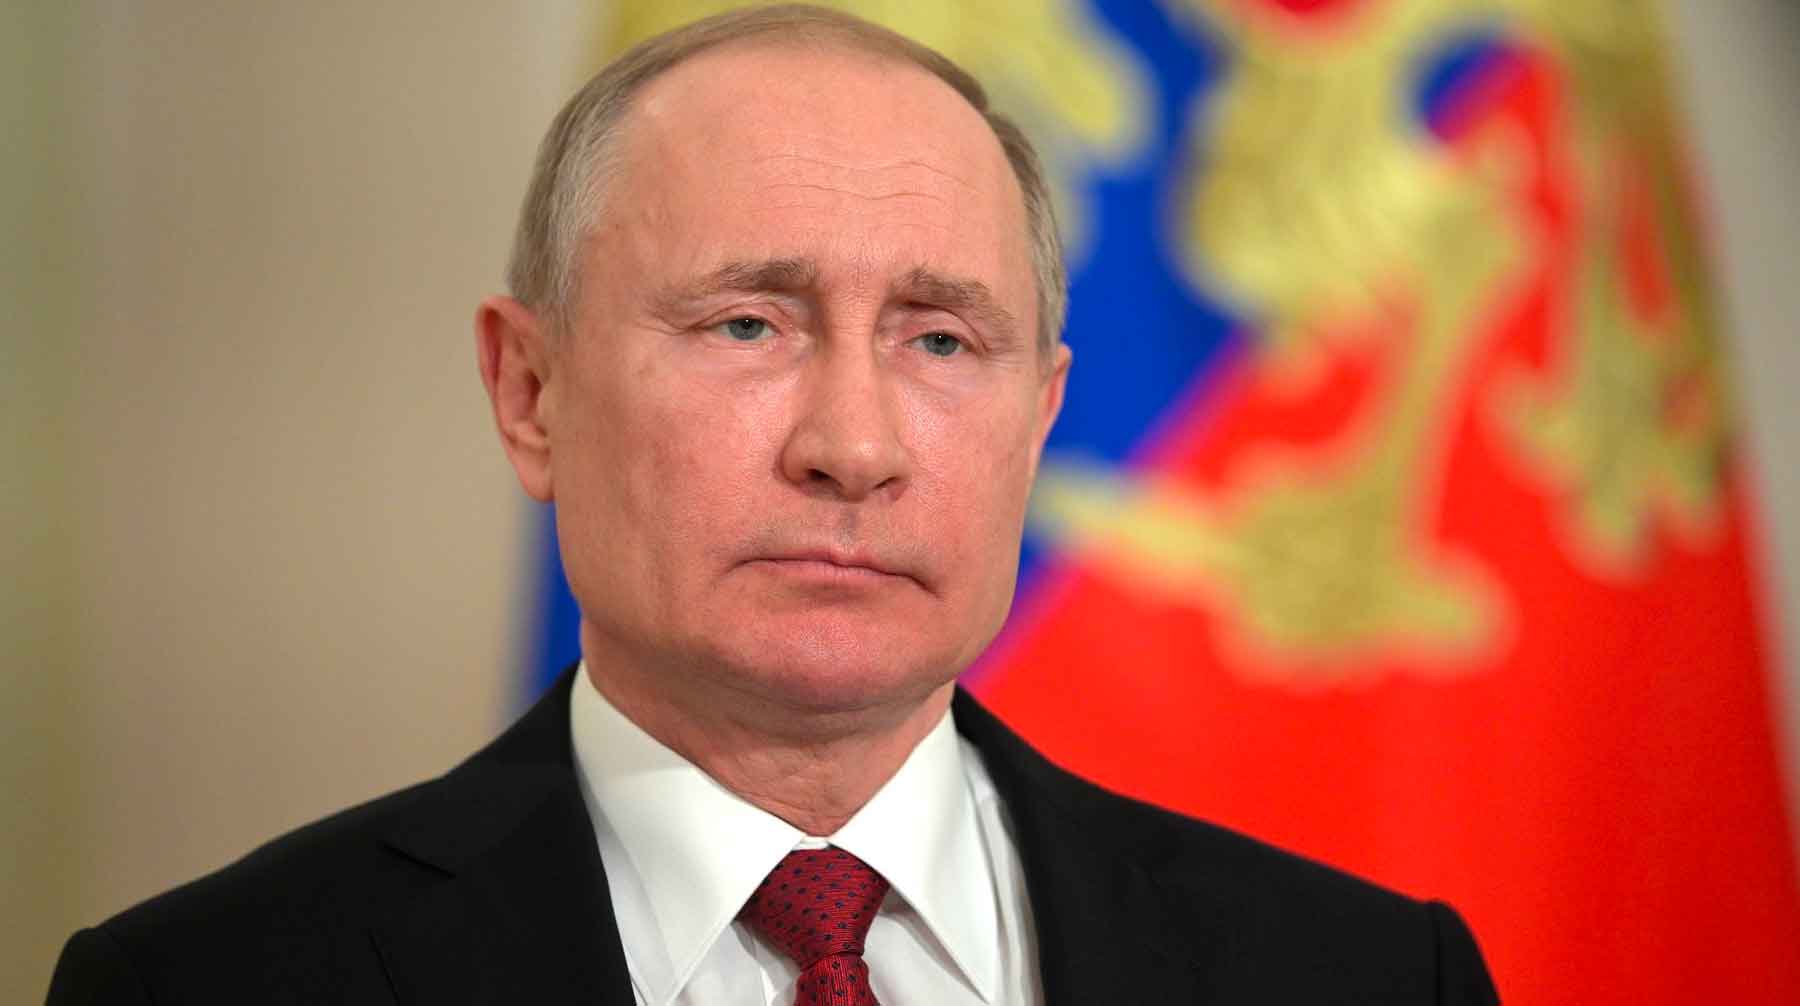 По мнению главы государства, бизнес нельзя допускать к управлению страной Фото: © GLOBAL LOOK press / Kremlin Pool